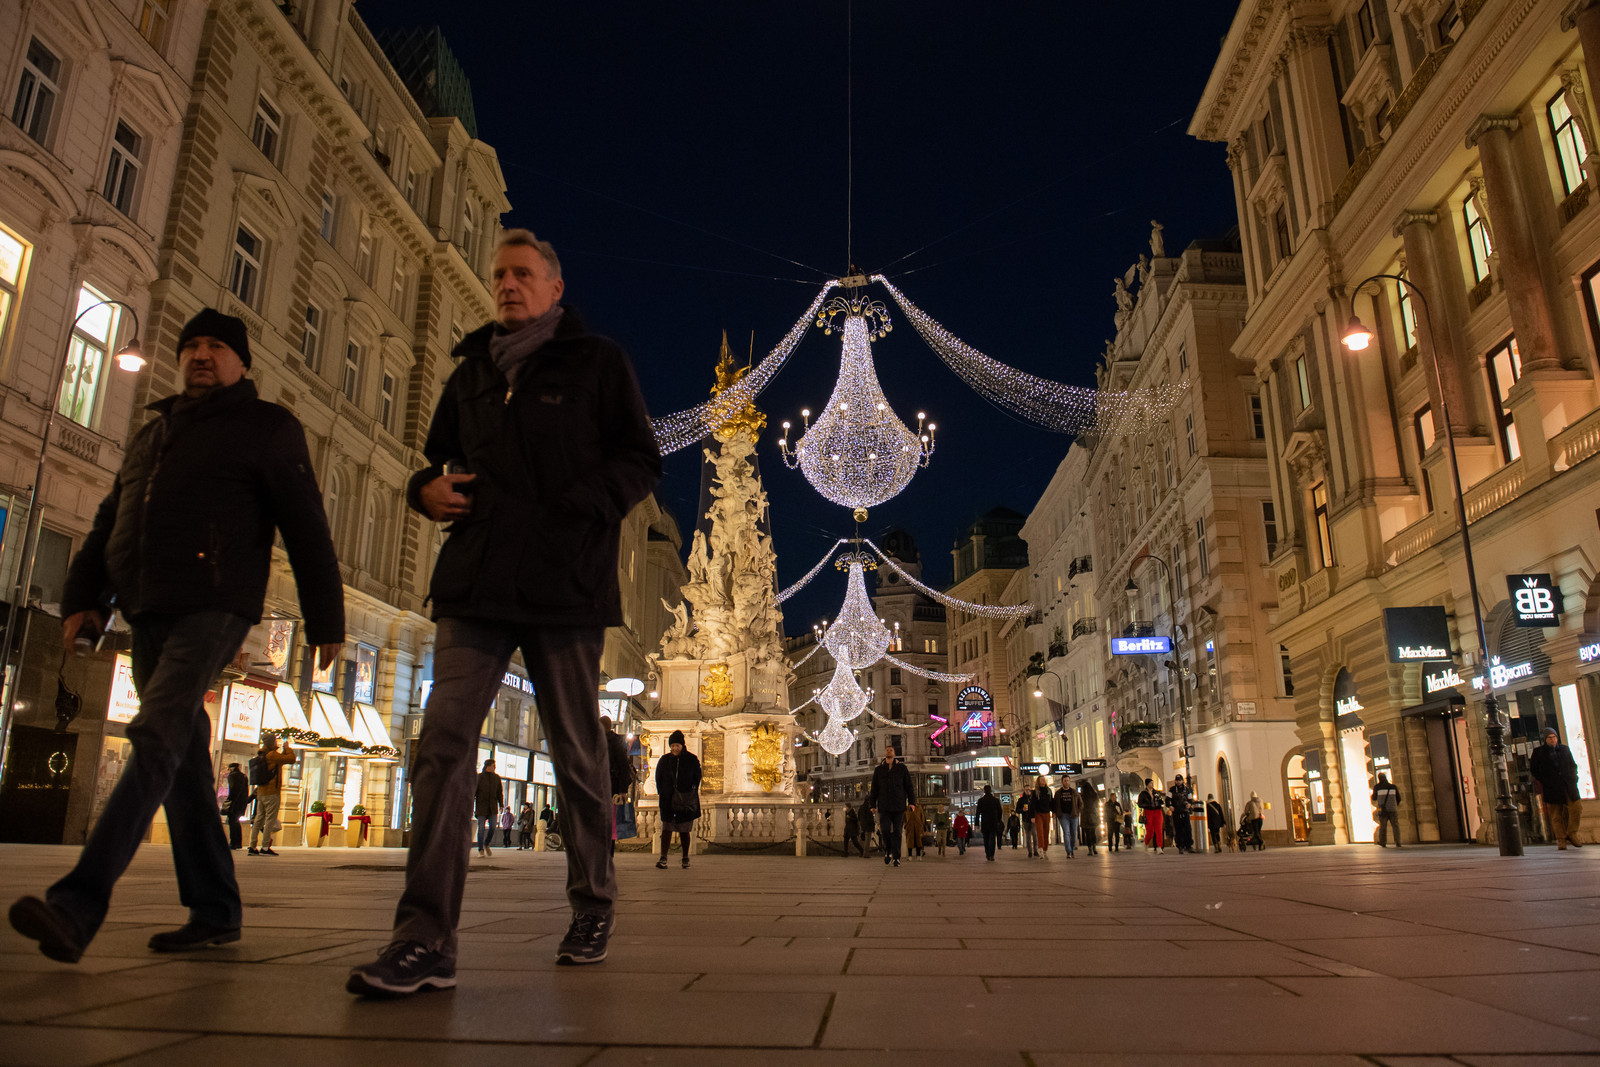 Waar het in de Weense winkelstraten normaal gezien over de koppen lopen is in aanloop naar de feestdagen, is het vandaag bijzonder rustig door de lockdown in Oostenrijk. Beeld Getty Images